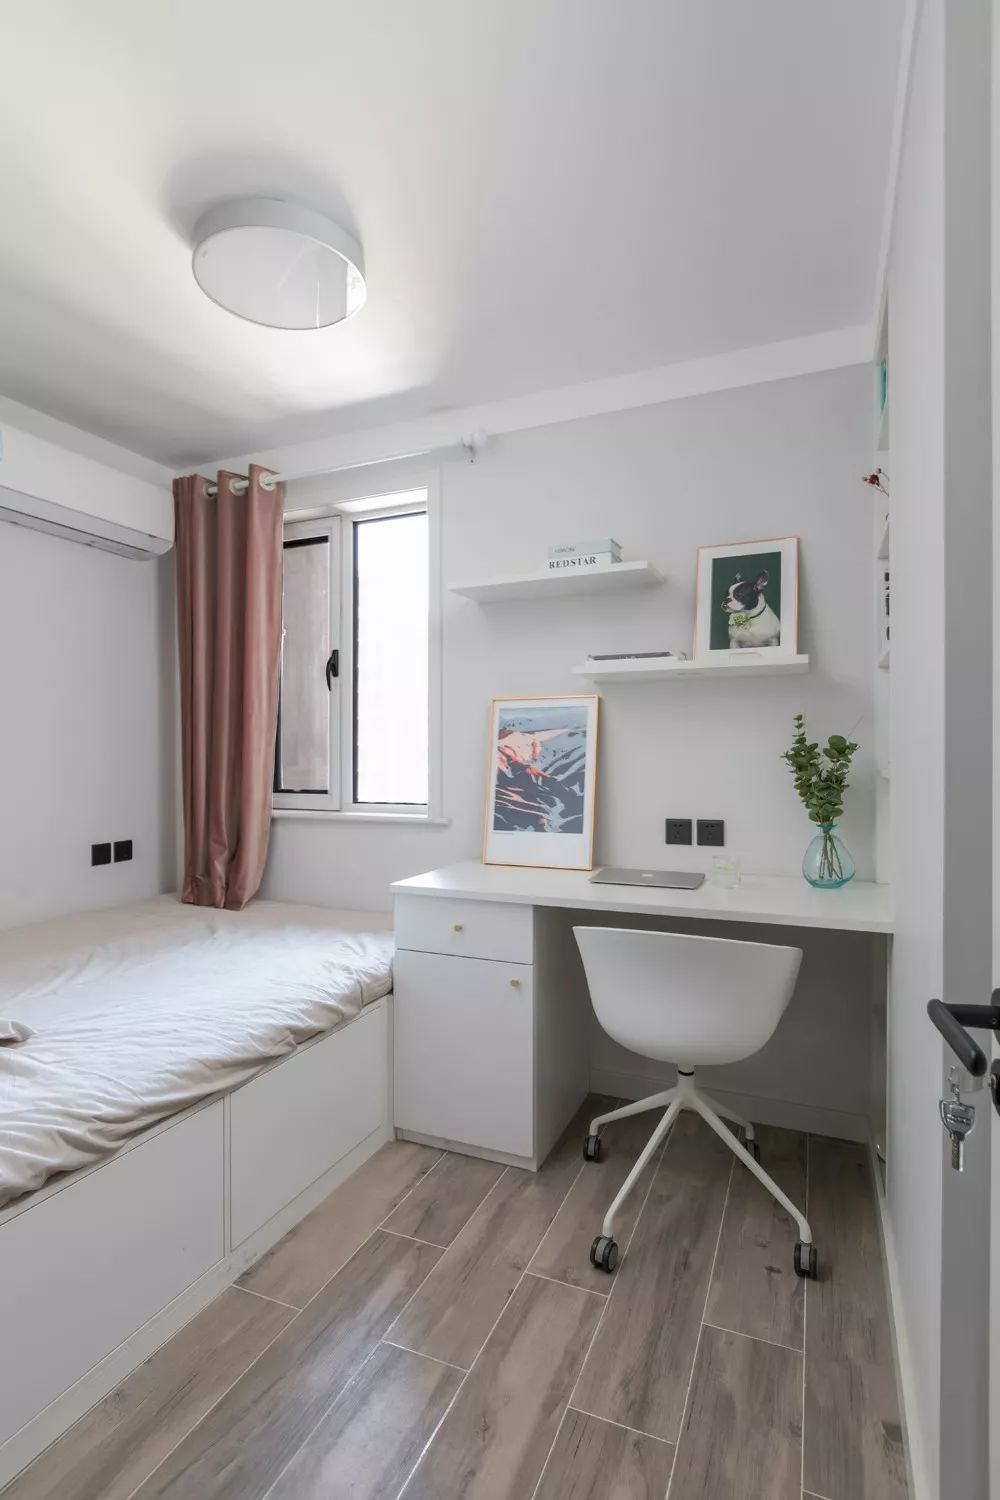 面积小的卧室床靠墙布置实用宽敞舒适